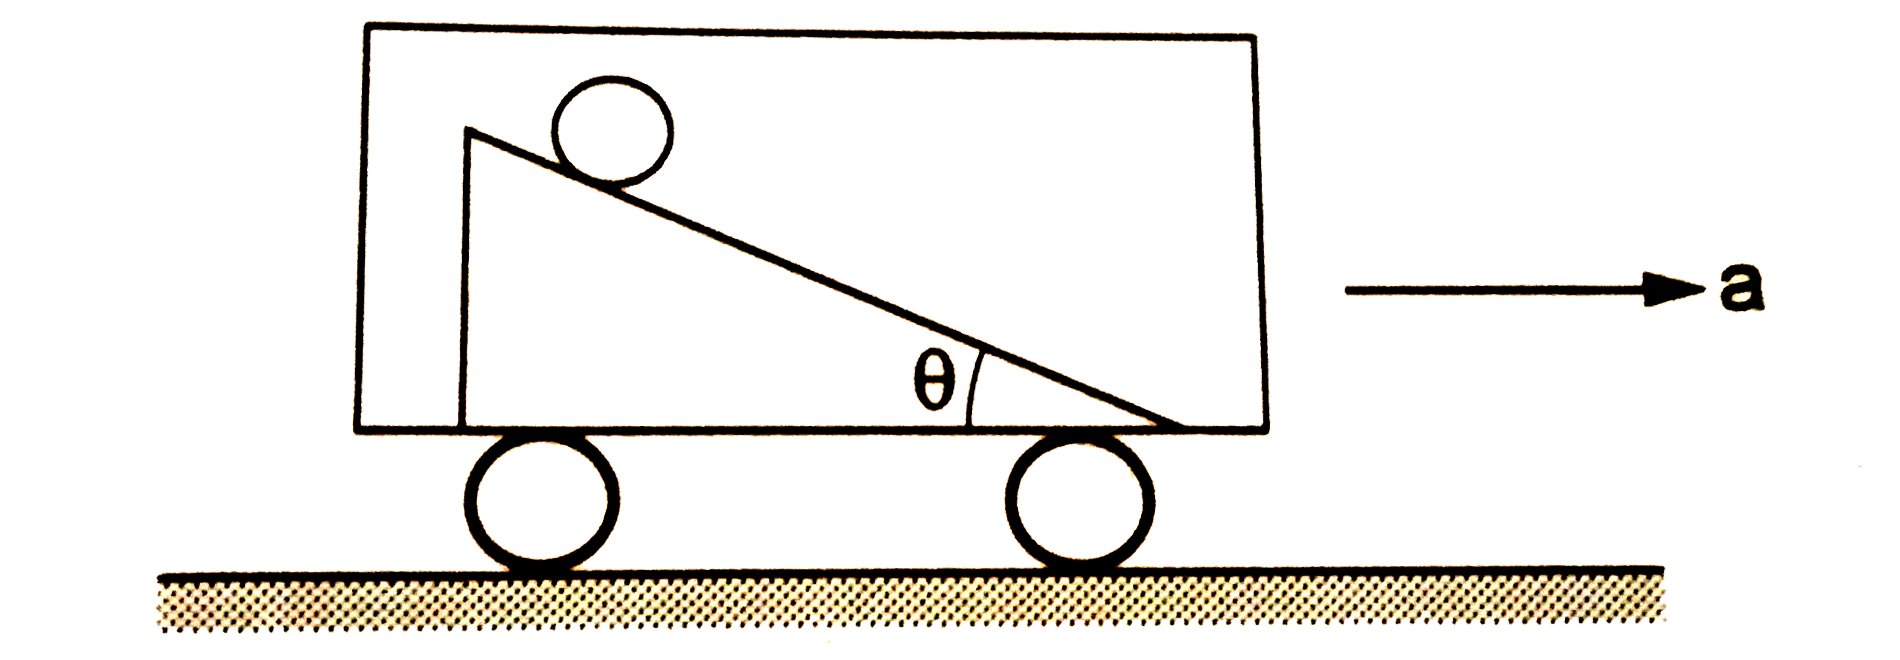 चित्र  में एक क्षैतिज सड़क पर चलती कार में रखा हुआ चिकना नत पर प्रदर्शित किया गया है। कार का त्वरण a है। नत तल का आनत कोण theta तथा कार के त्वरण a में संबंध a=g tanthetaहै। यदि एक गोले को इस नत तल पर शुद्ध लोटनी गति कराकर छोड़ दिया जाए, तो